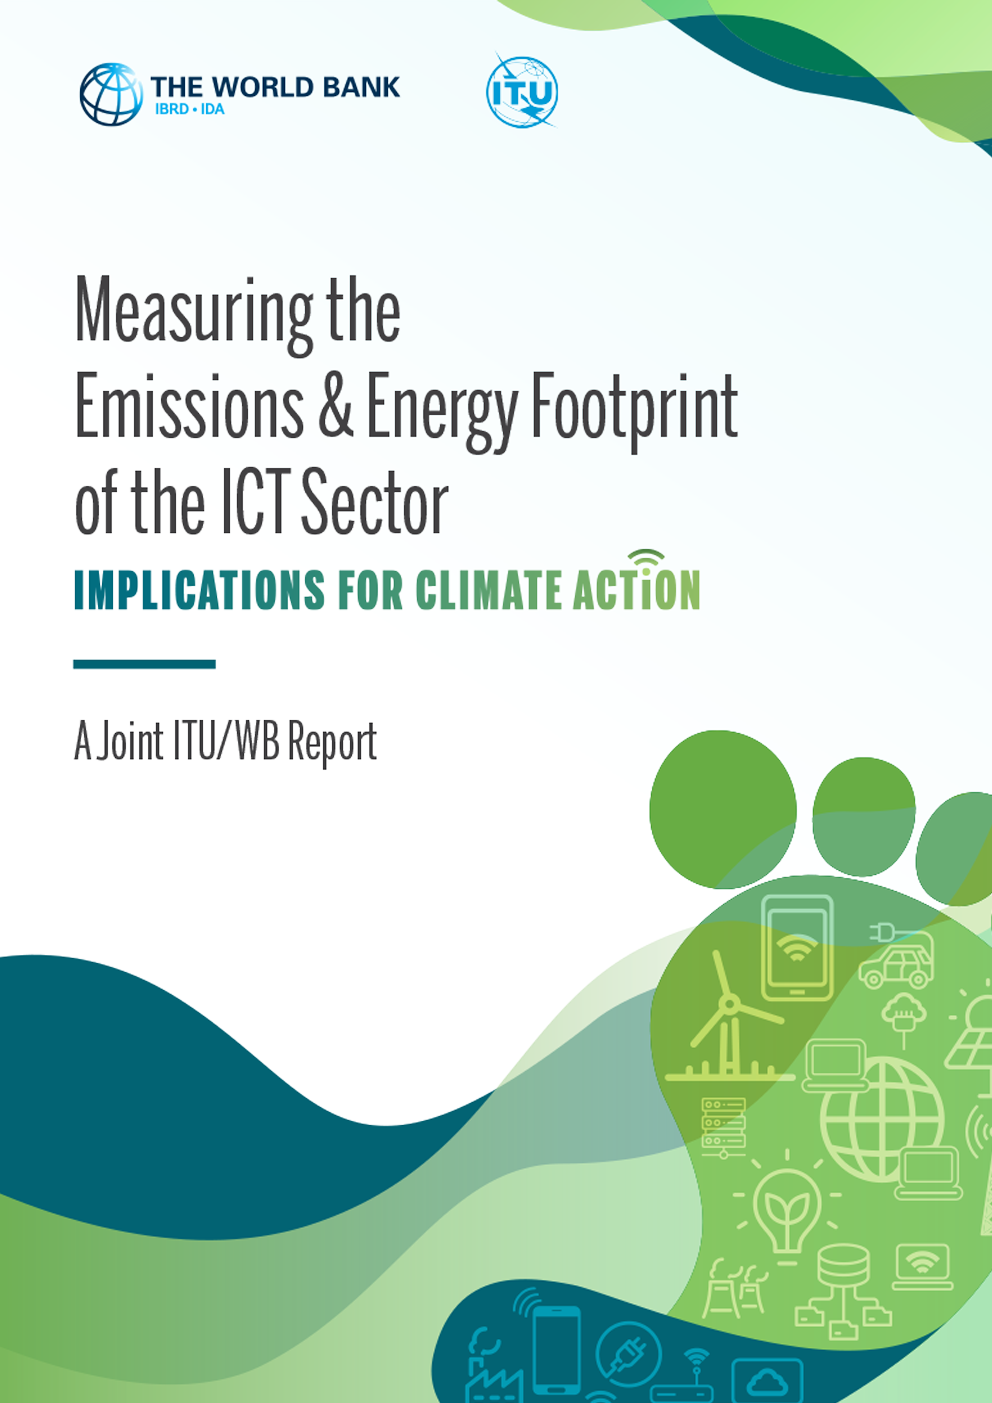 国际电联-世界银行联合报告 : 衡量信息通信技术部门的排放和能源足迹：对气候行动的影响 